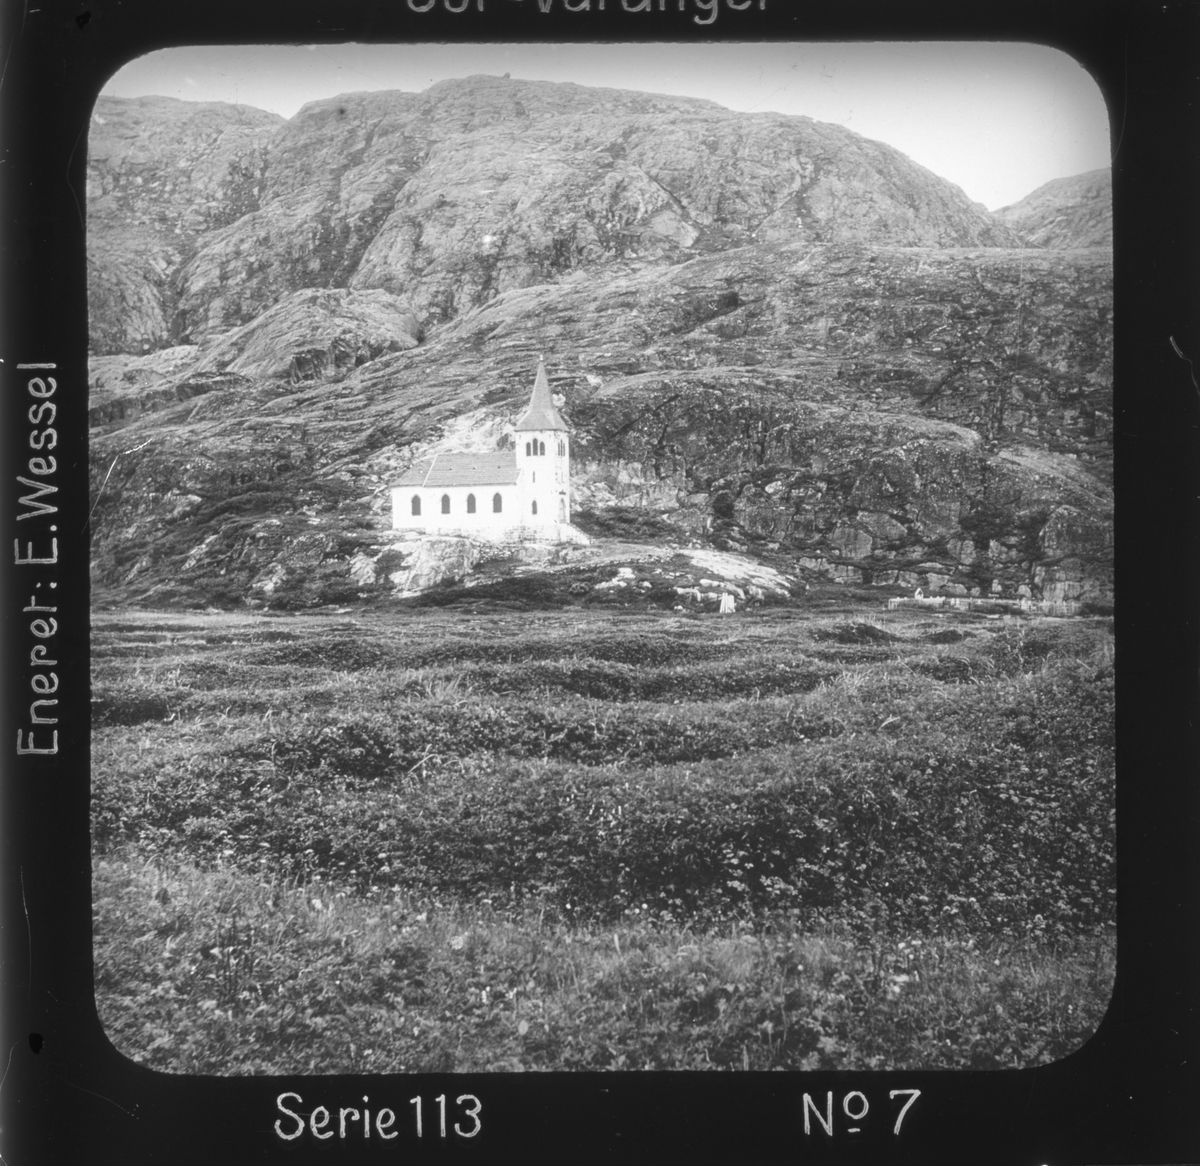 Oscar II's kapell, Grense Jakobselv, Sør-Varanger, Finnmark.
Motivet har nr.7 i lysbildeforedraget kalt  "I lappernes land - Sør-Varanger", utgitt i Nerliens Lysbilledserier, serie nr 113. 